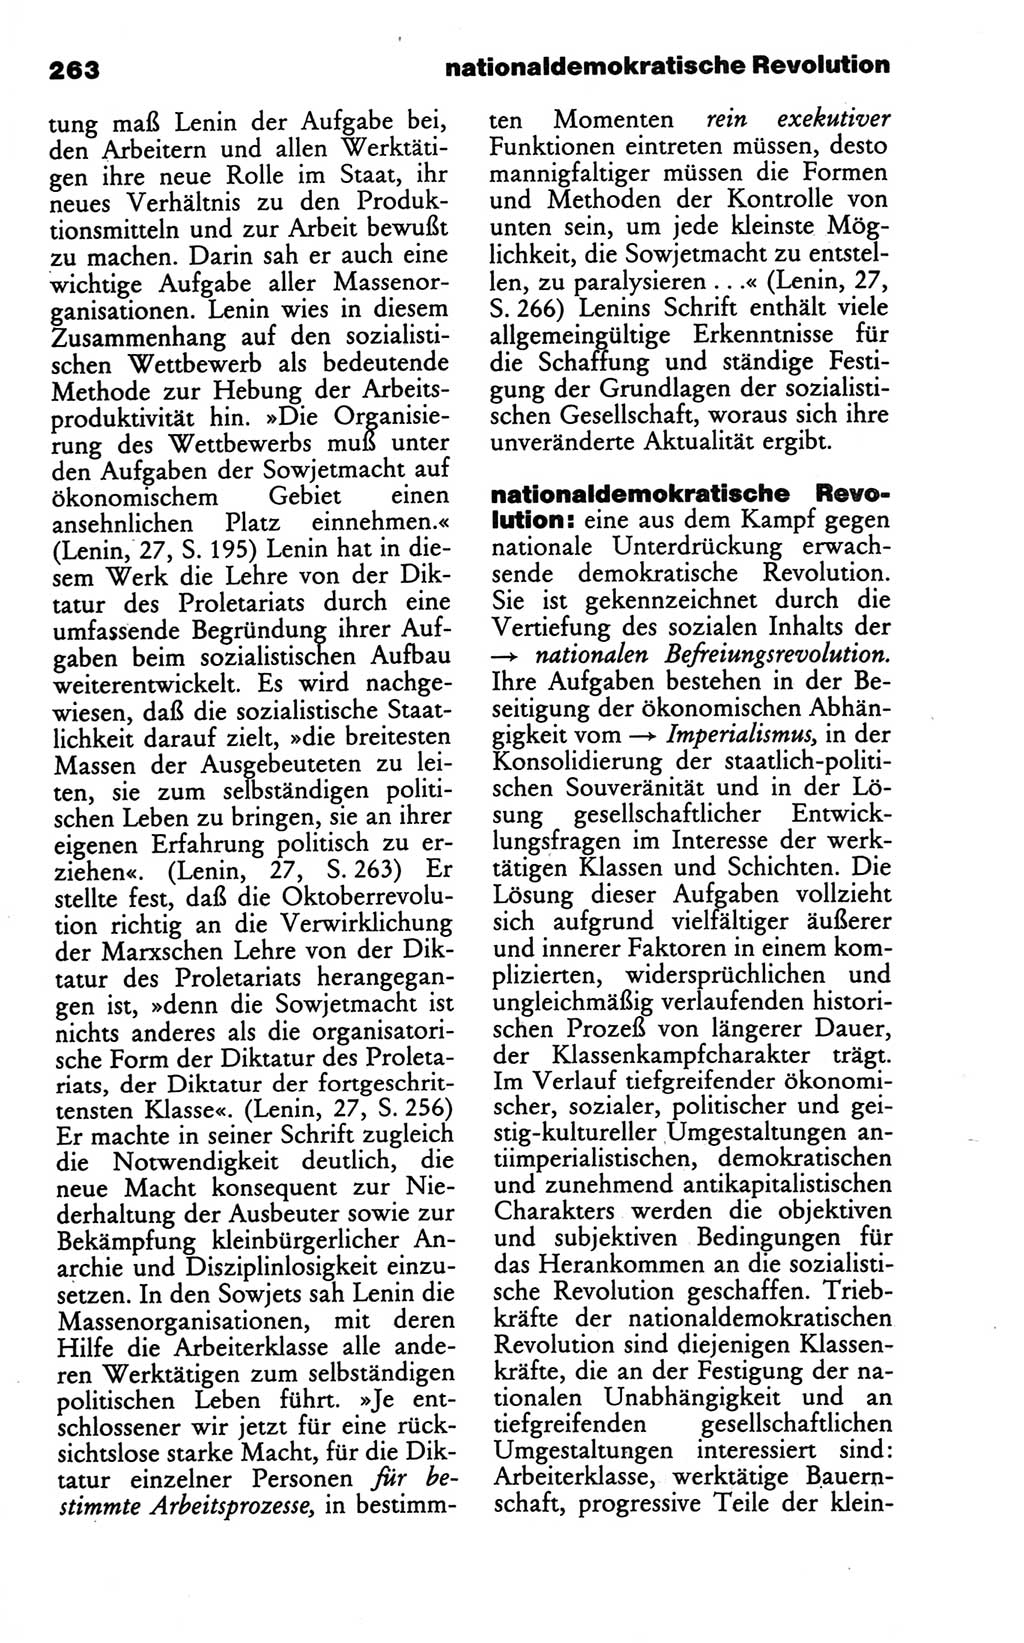 Wörterbuch des wissenschaftlichen Kommunismus [Deutsche Demokratische Republik (DDR)] 1986, Seite 263 (Wb. wiss. Komm. DDR 1986, S. 263)